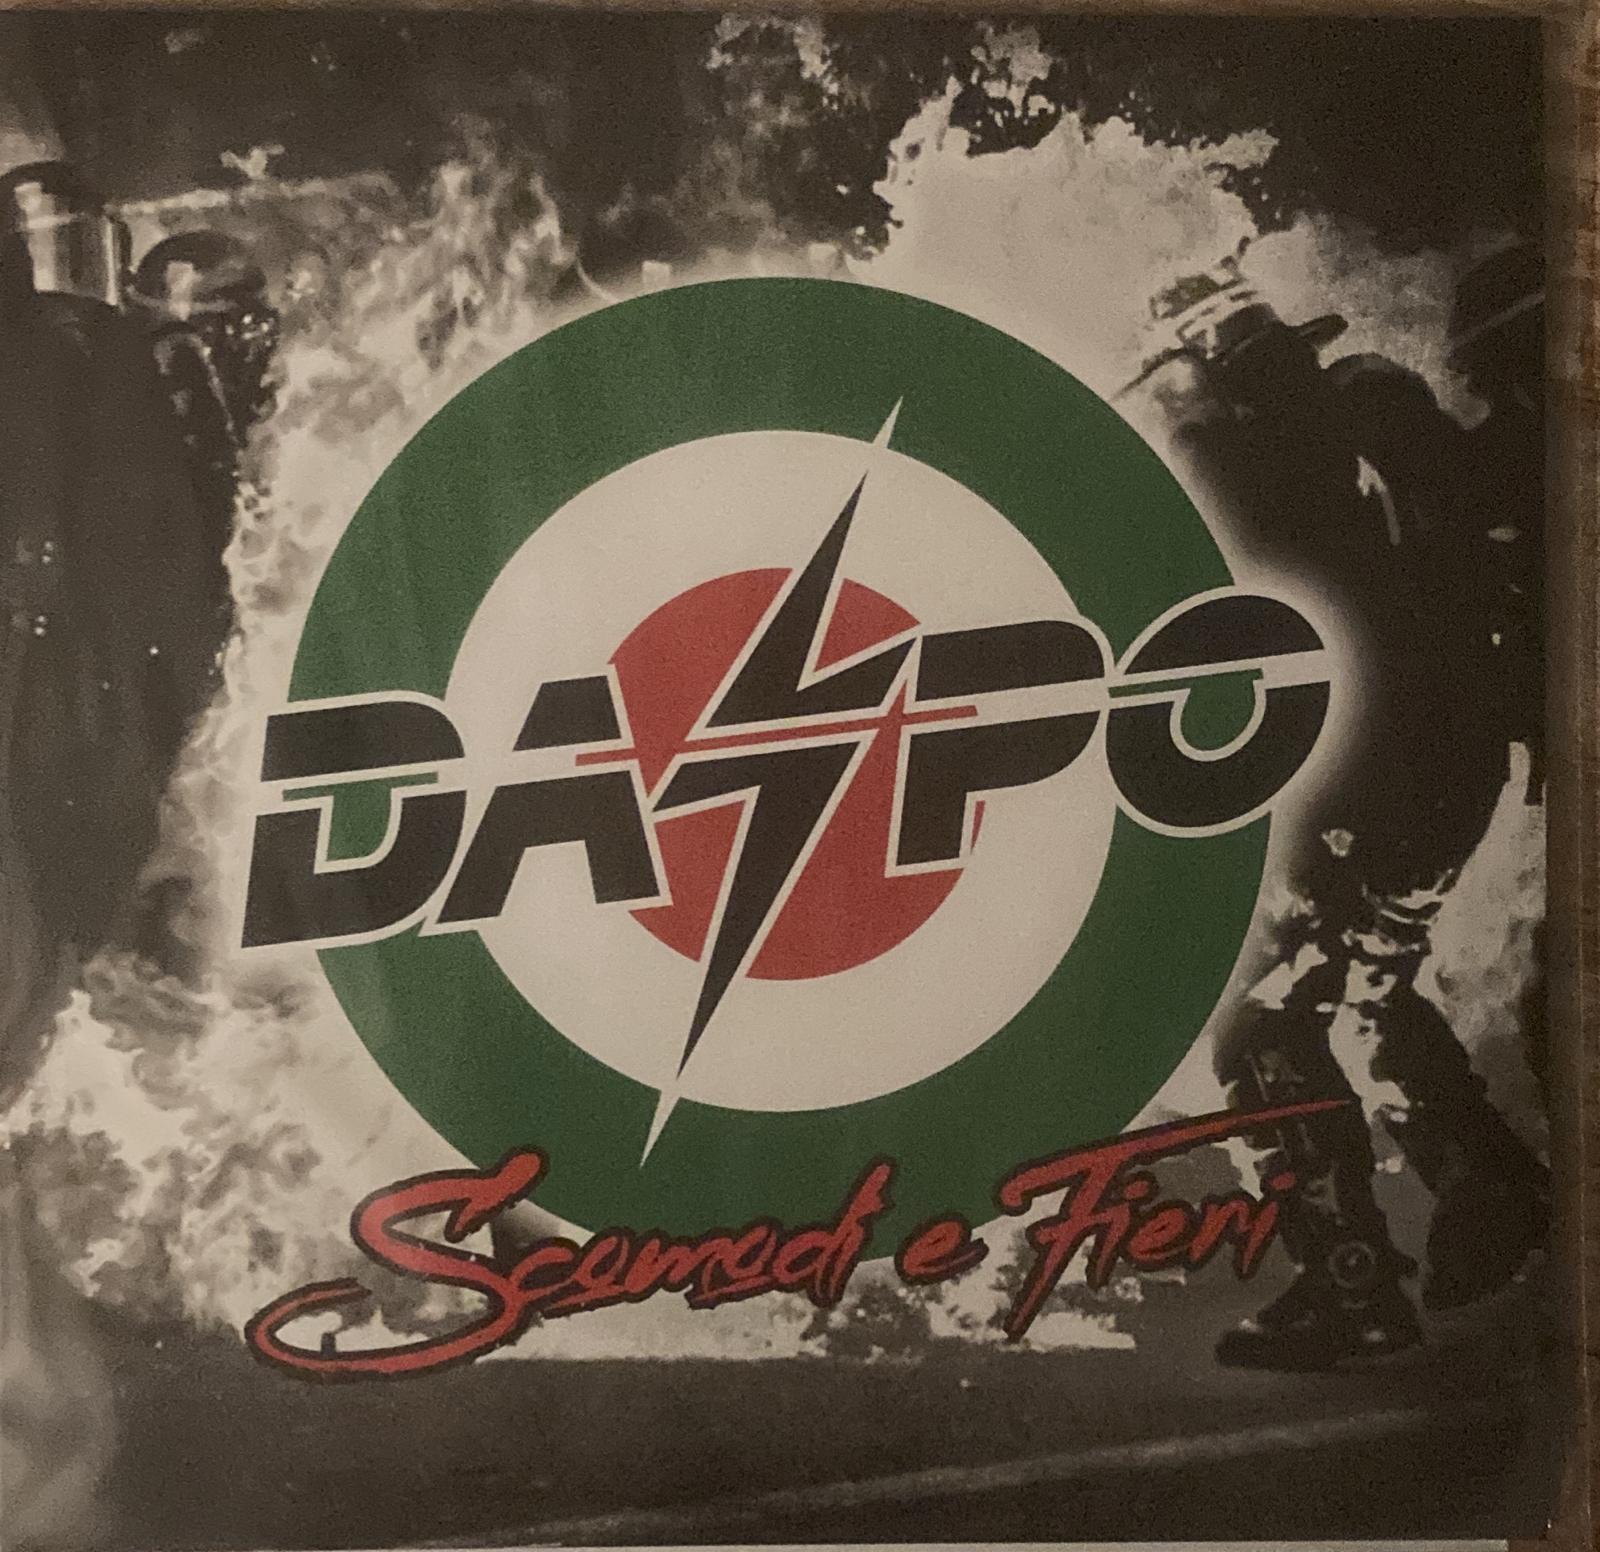 Daspo – Scomodi E Fieri (LP version)